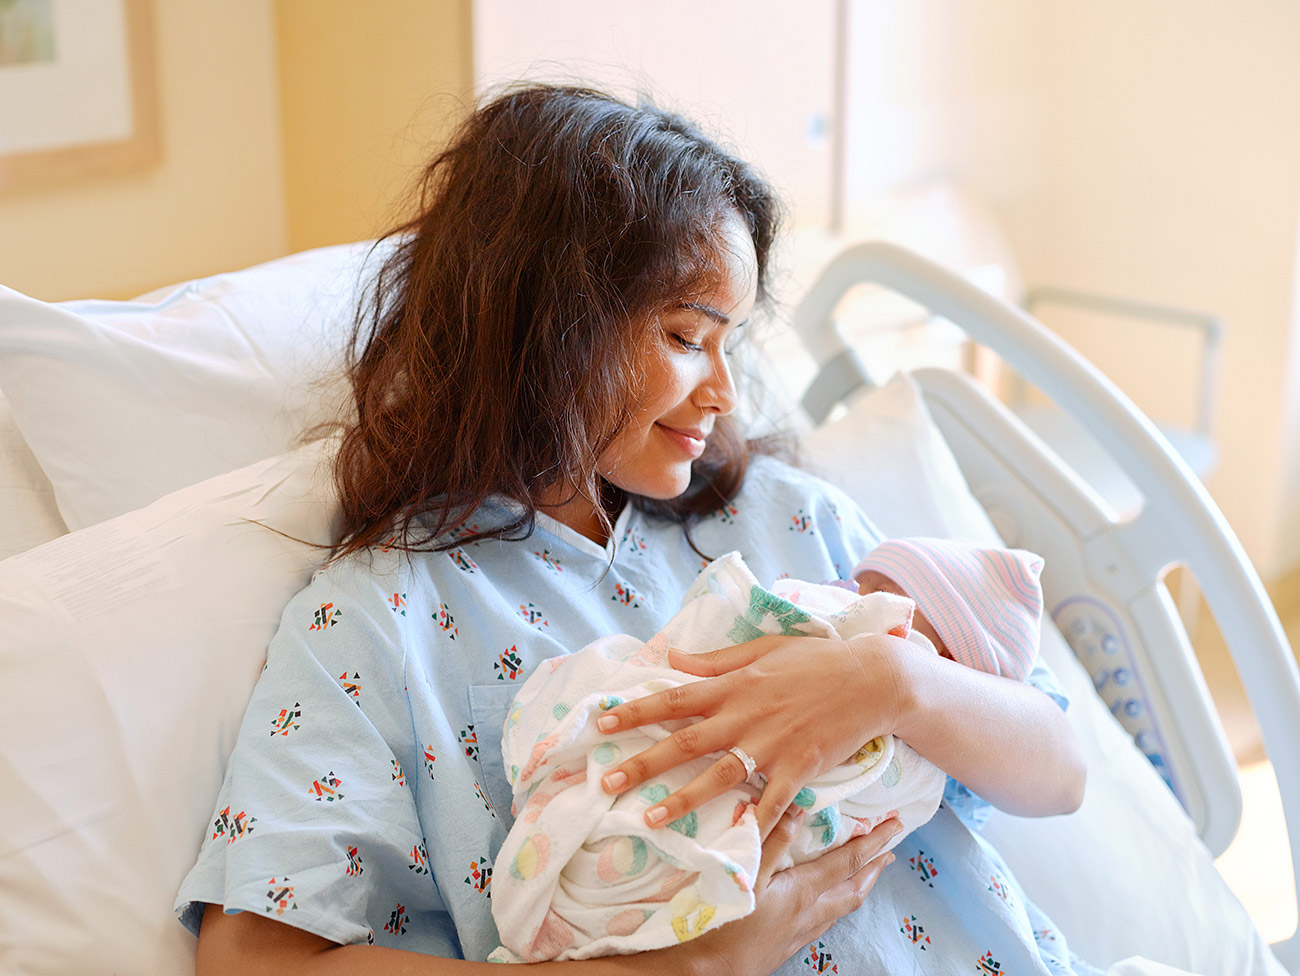 拿着新出生的婴孩的医院病床的妇女。